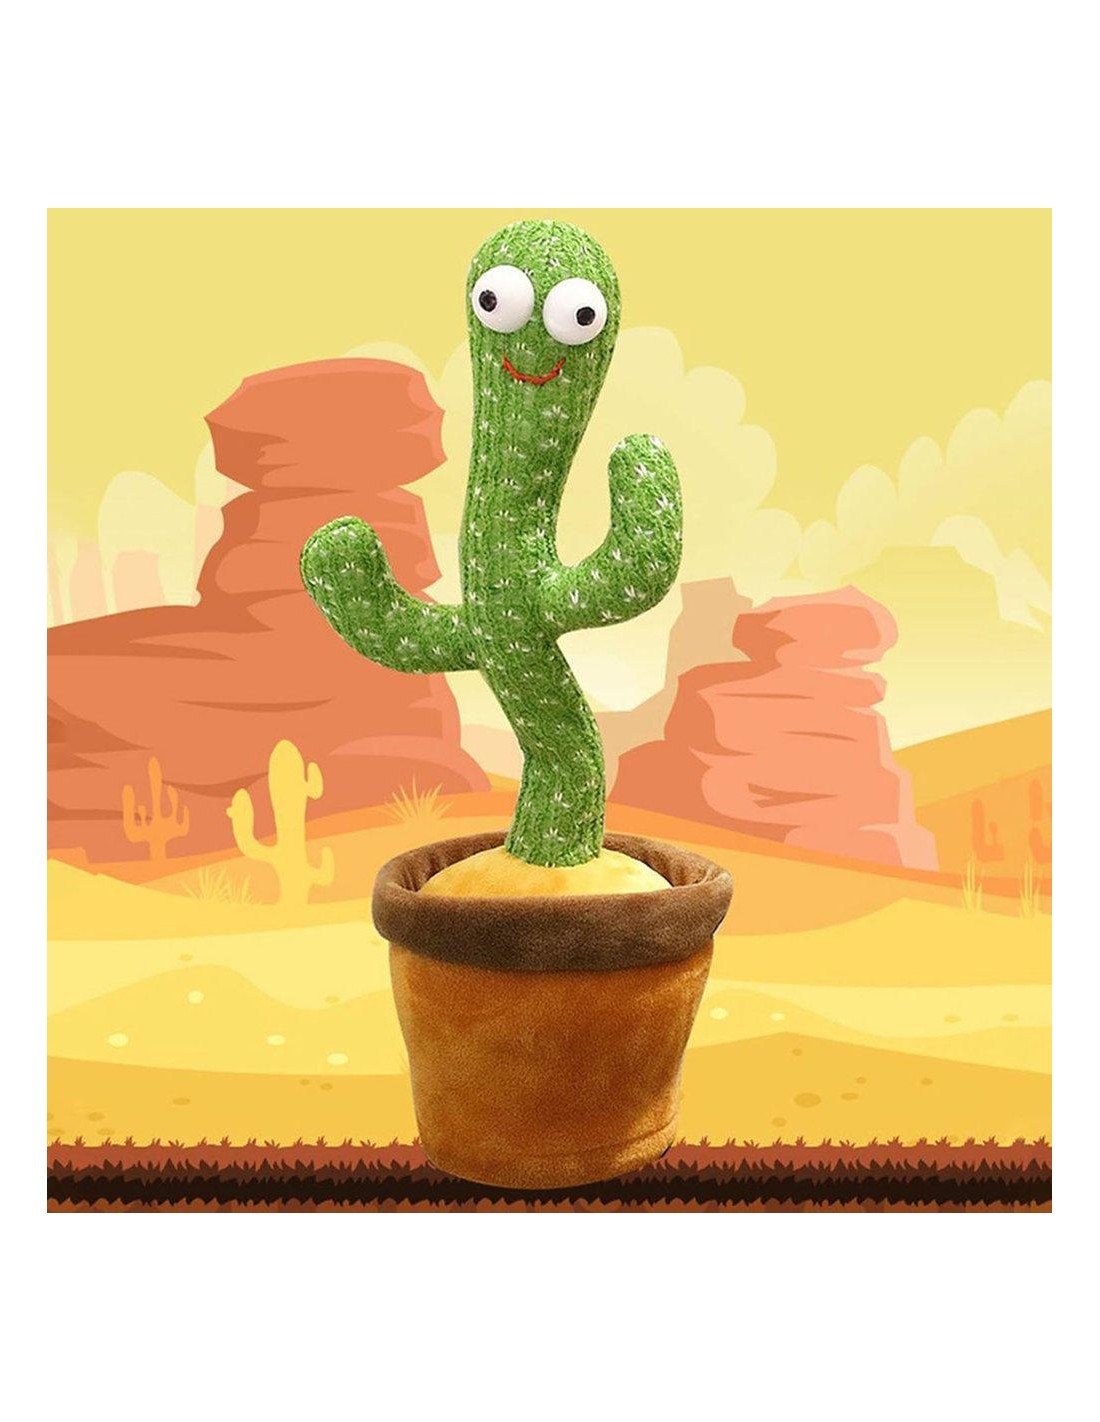 Kyona a testé le cactus qui parle 